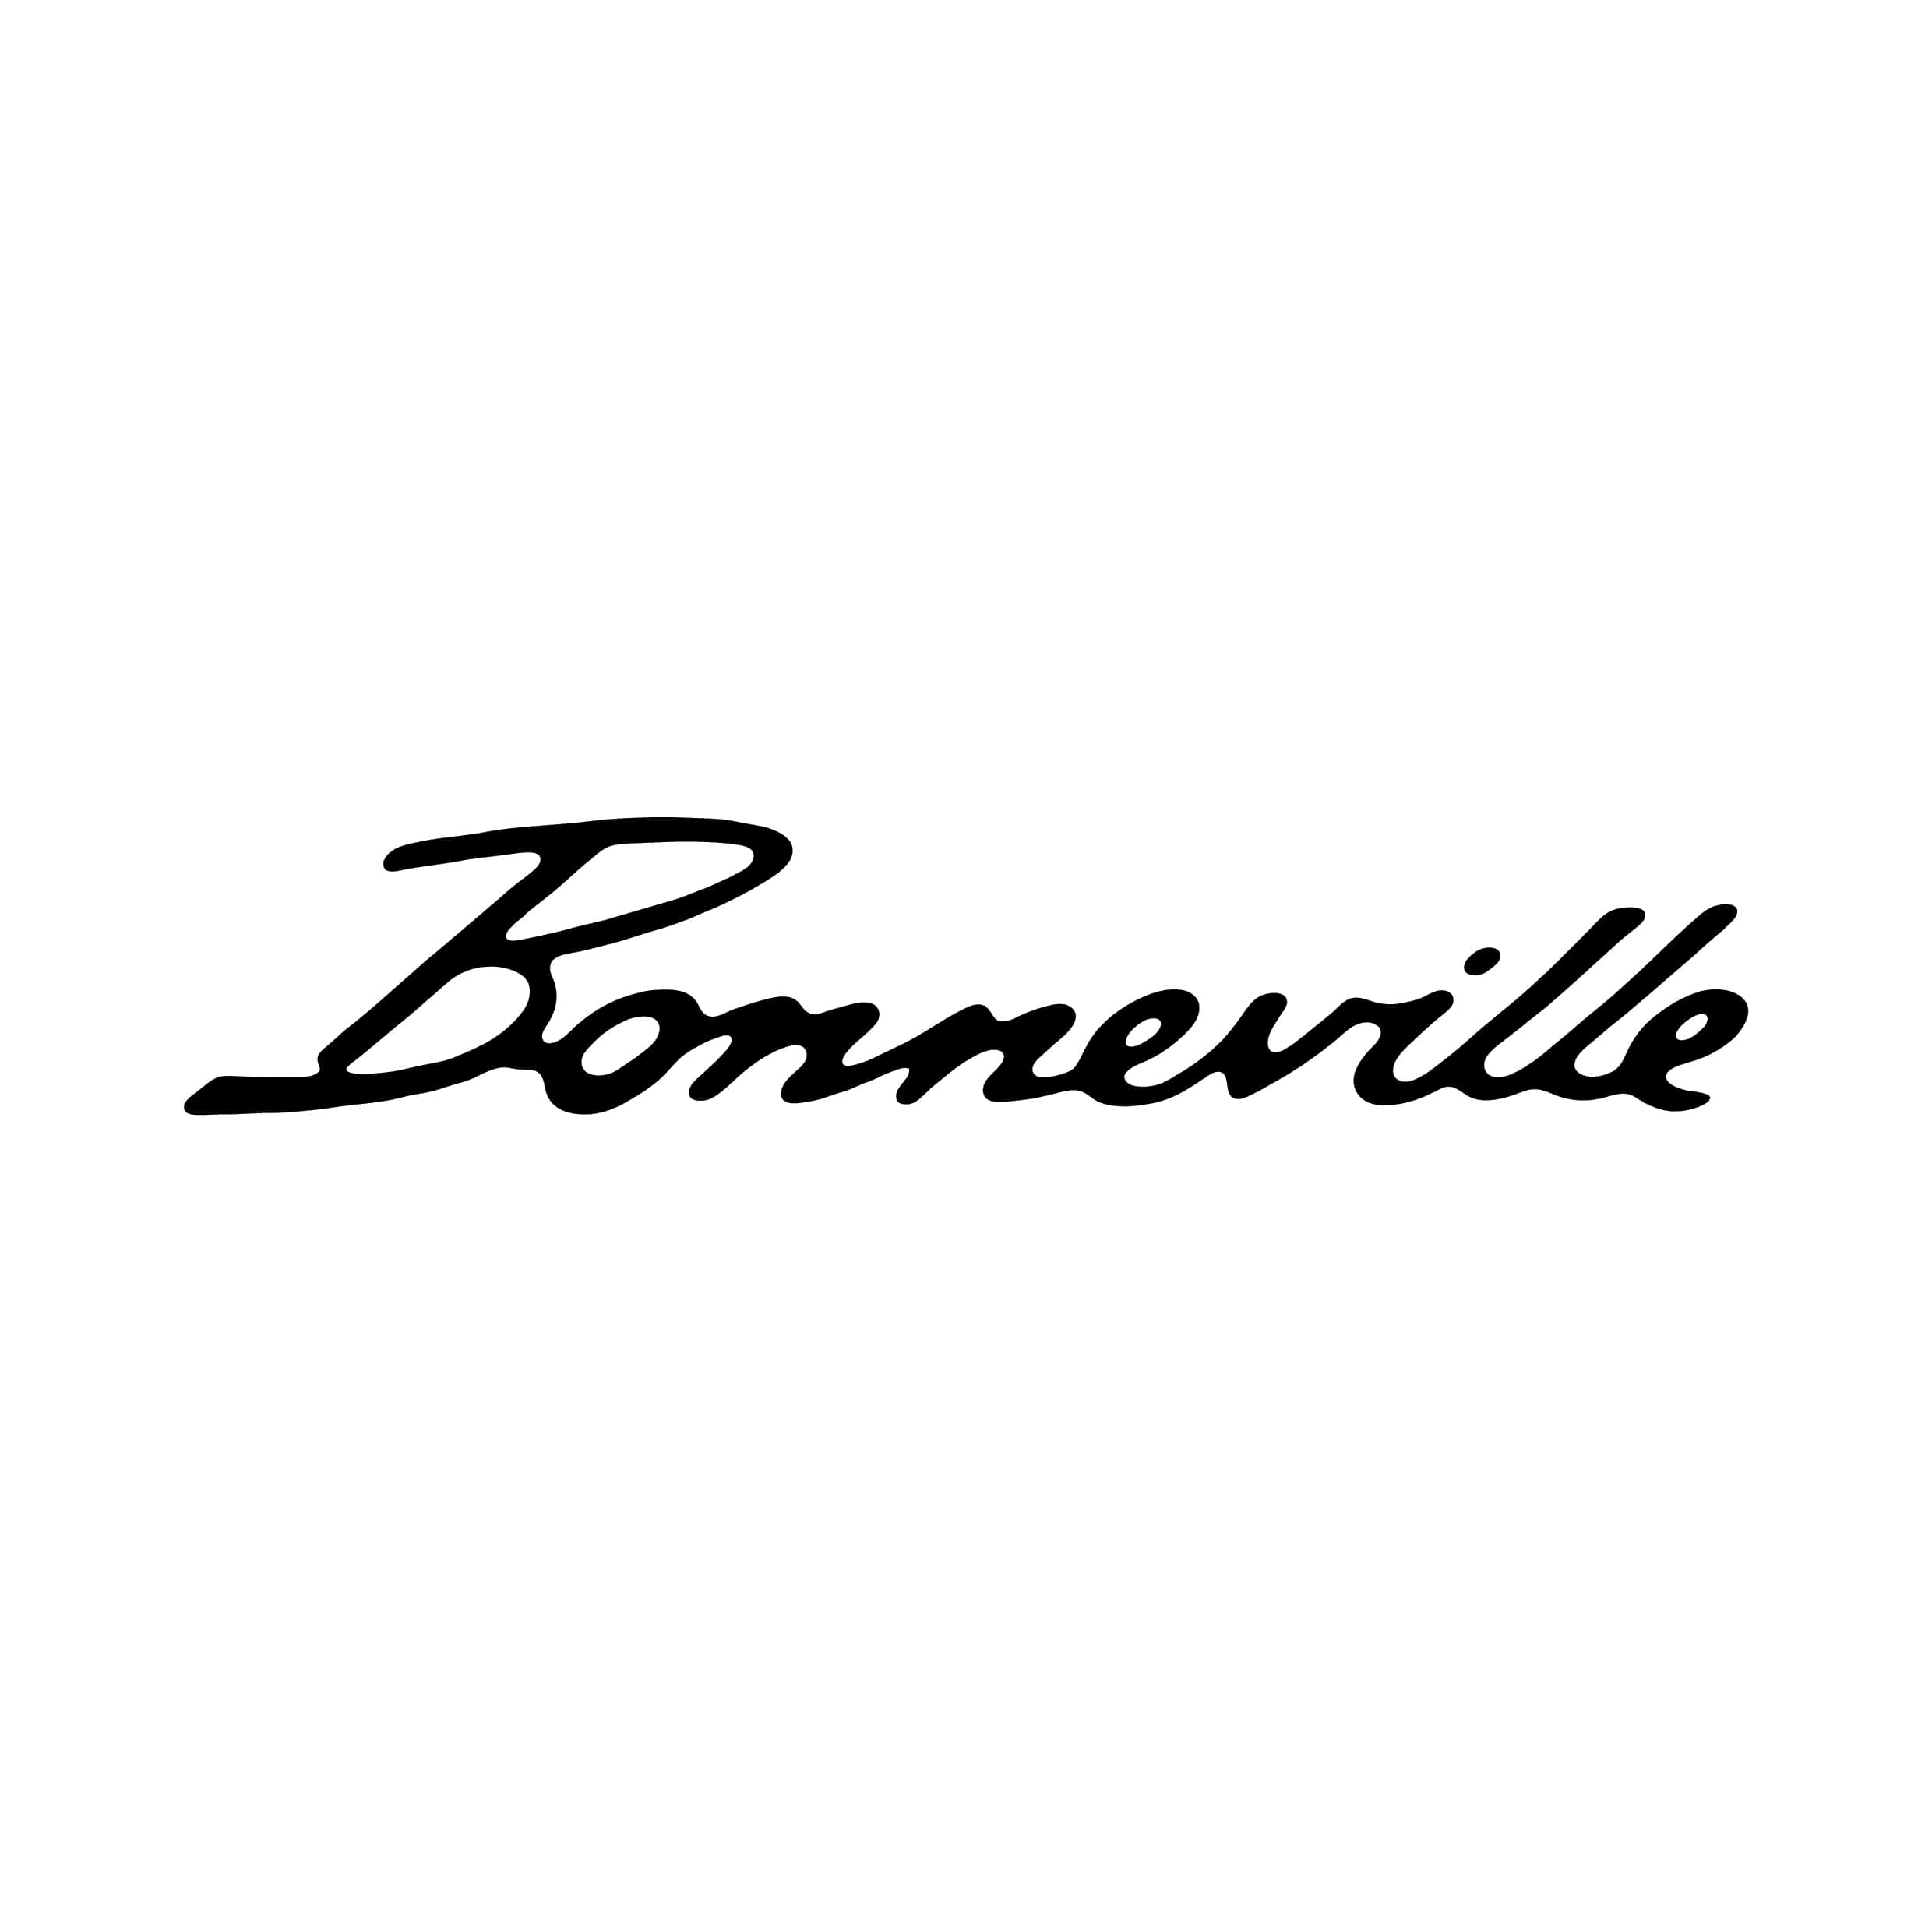 stickers-Bonneville-triumph-ref16-autocollant-moto-sticker-deux-roue-autocollants-decals-sponsors-tuning-sport-logo-bike-scooter-min